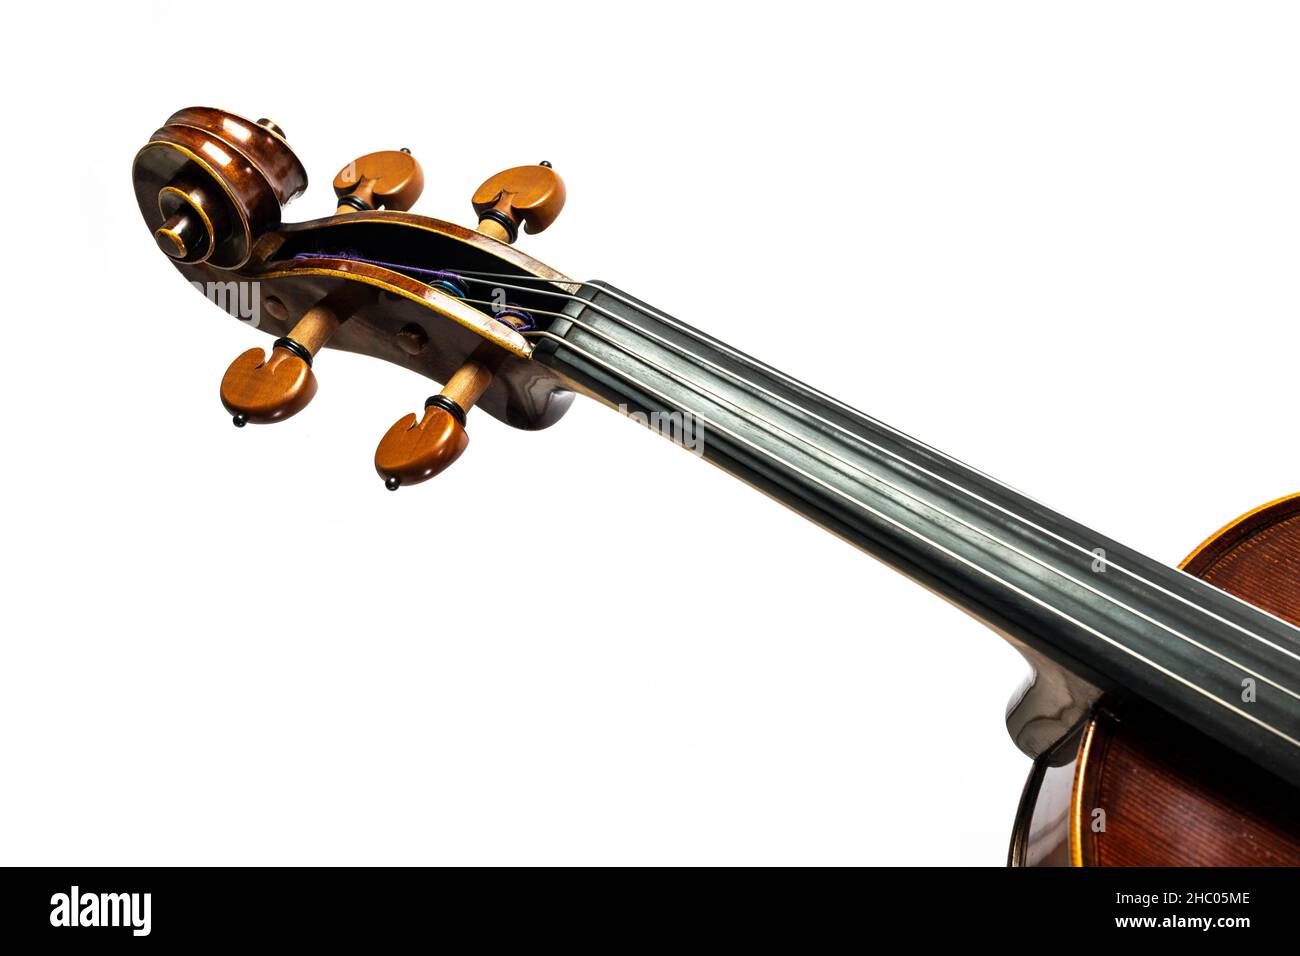 Scroll, pegbox e fingerboard di un viola, parte dello strumento musicale a corda della famiglia viol, isolato su uno sfondo bianco, copia spazio Foto Stock